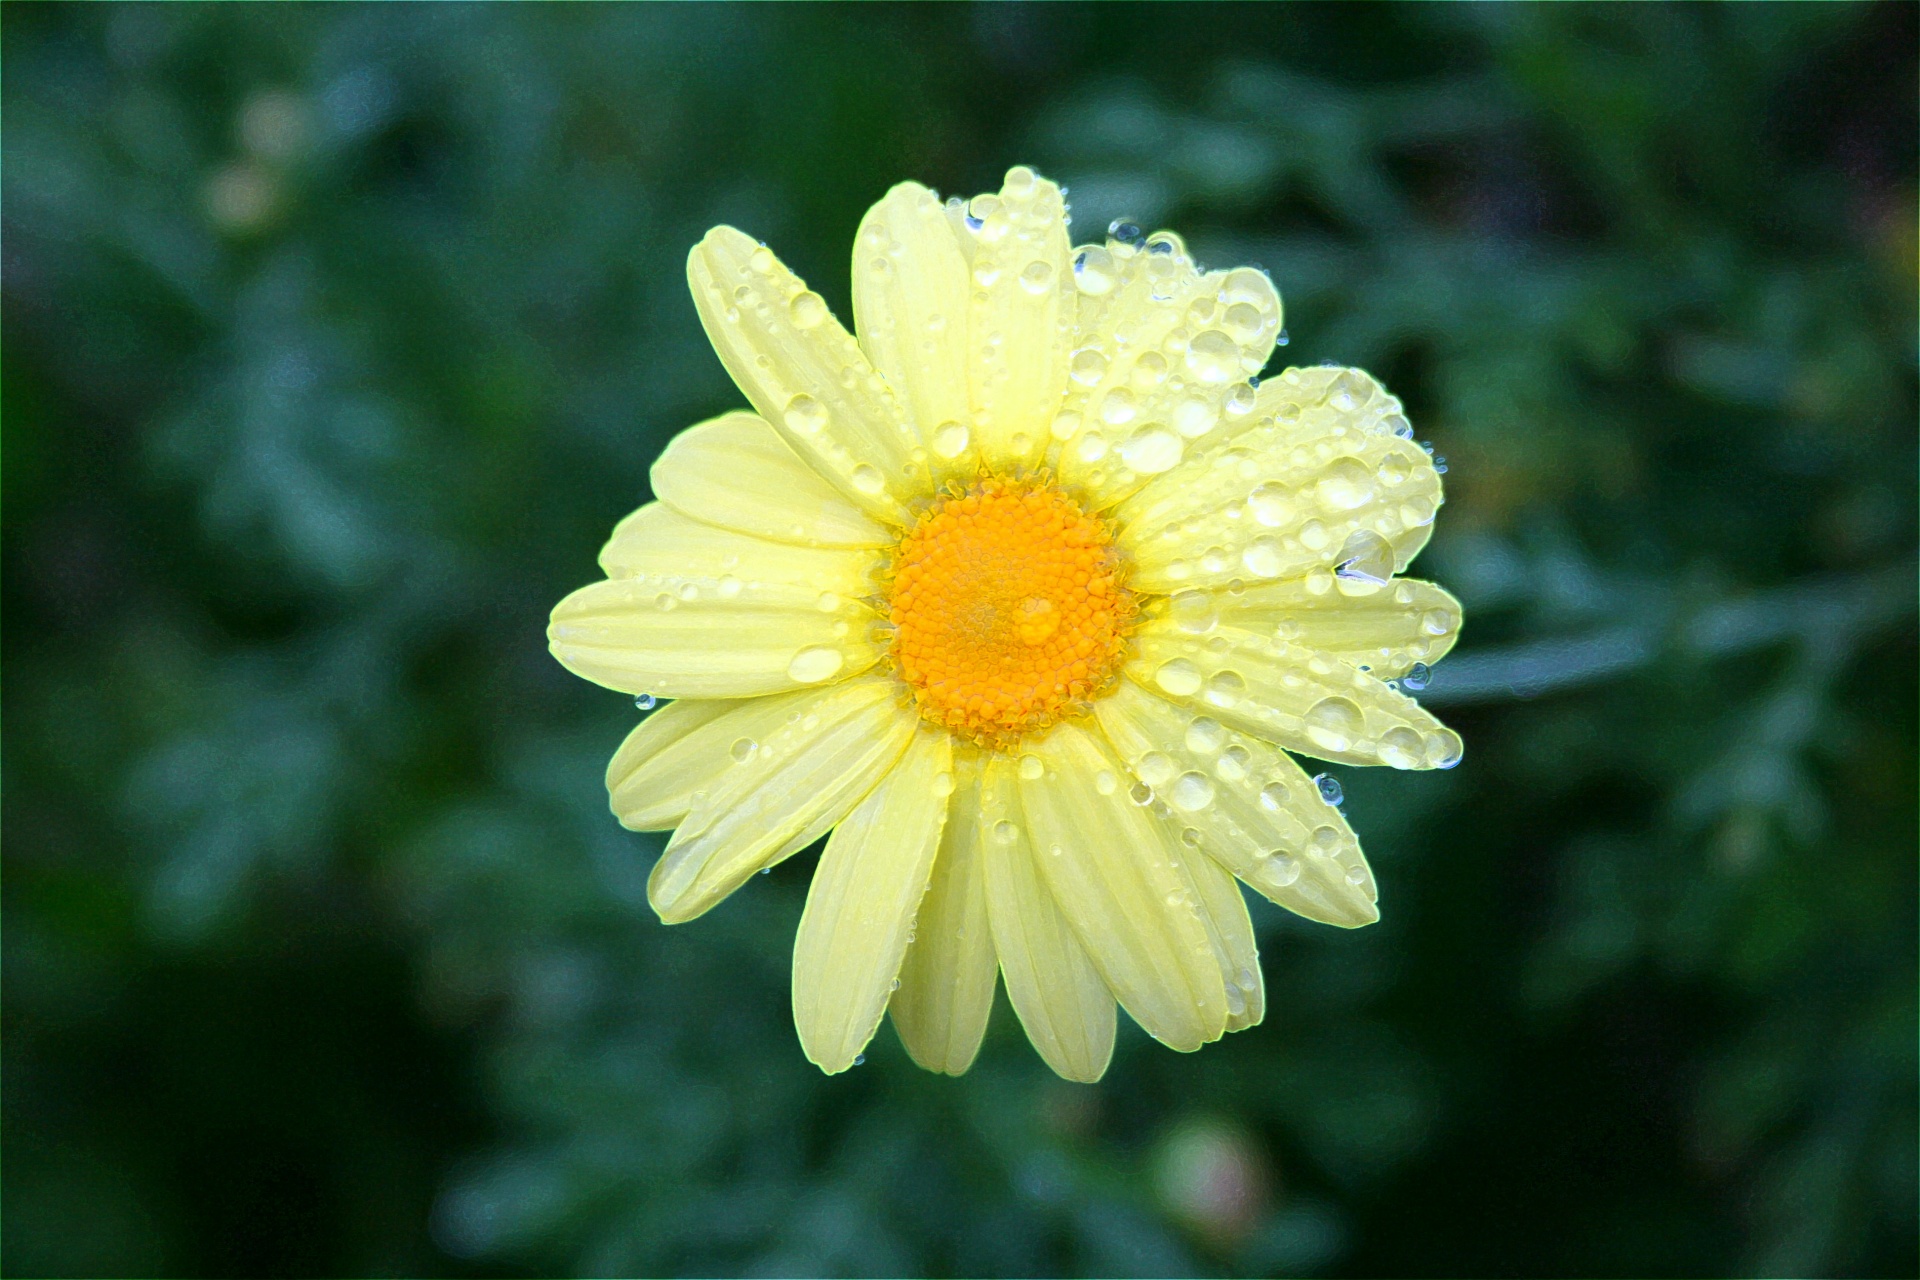 Daisy,drops,water,rain,yellow - free photo from needpix.com AMP.